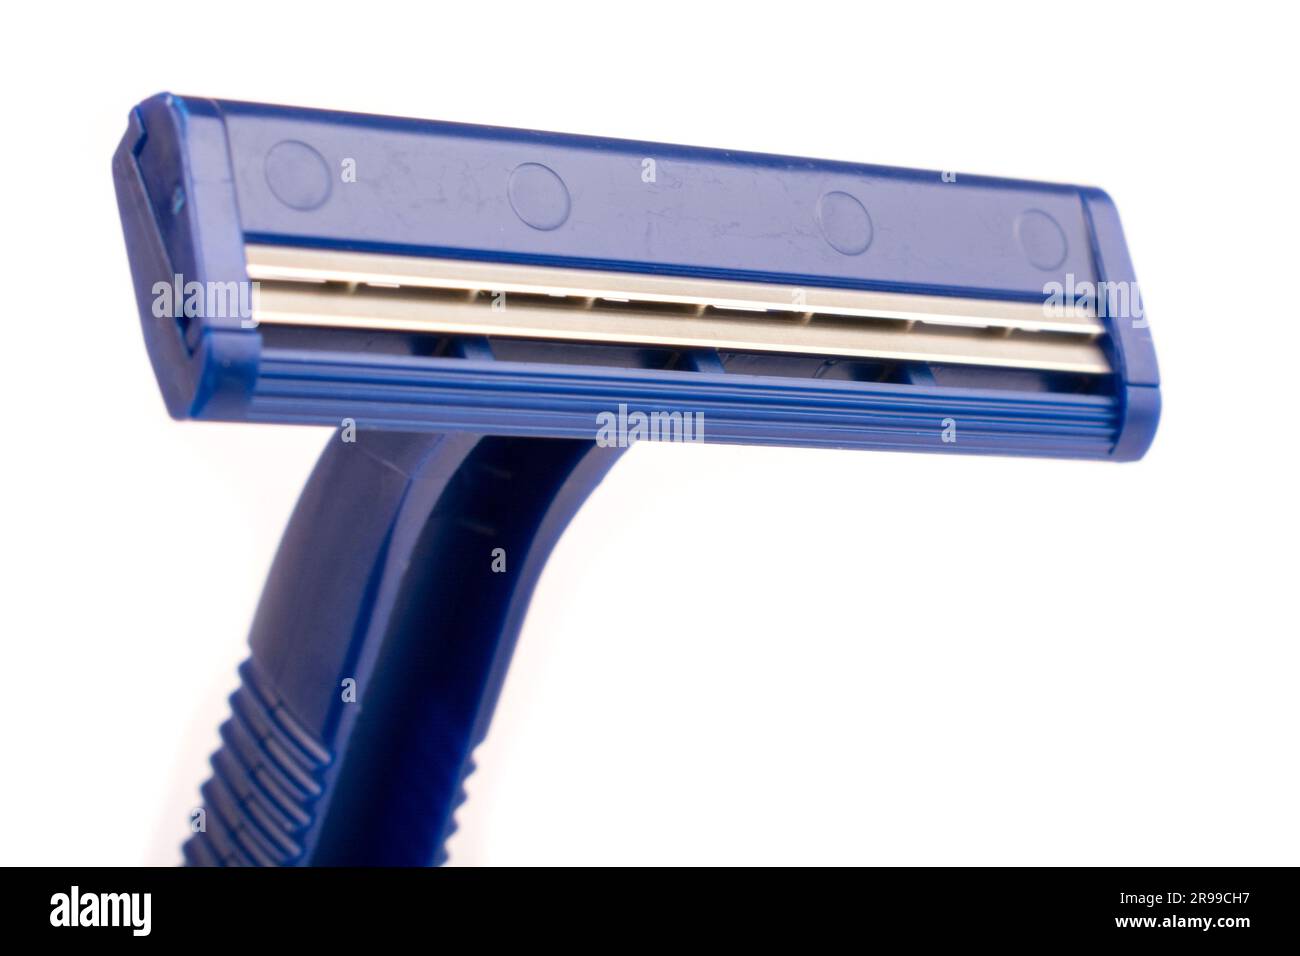 blue razor, machine tool, isolated on white background Stock Photo